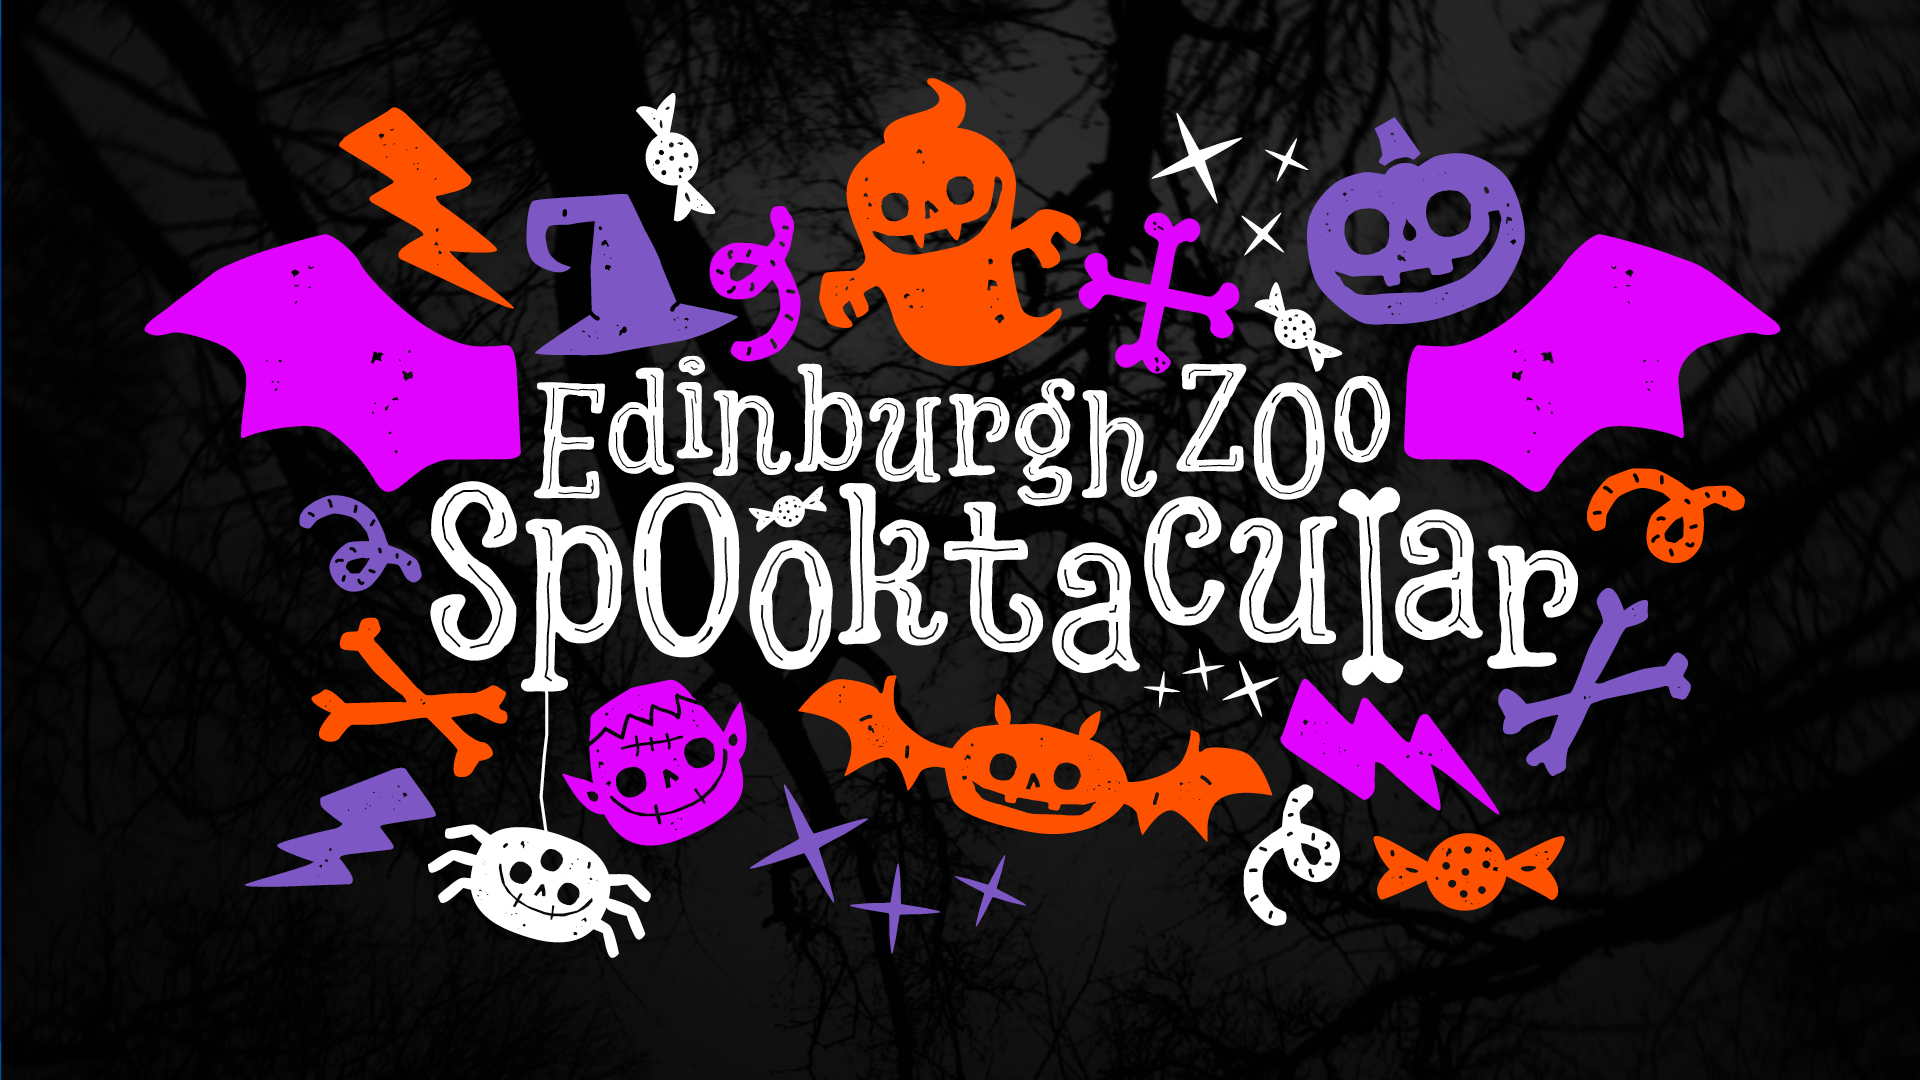 spooktacular event banner